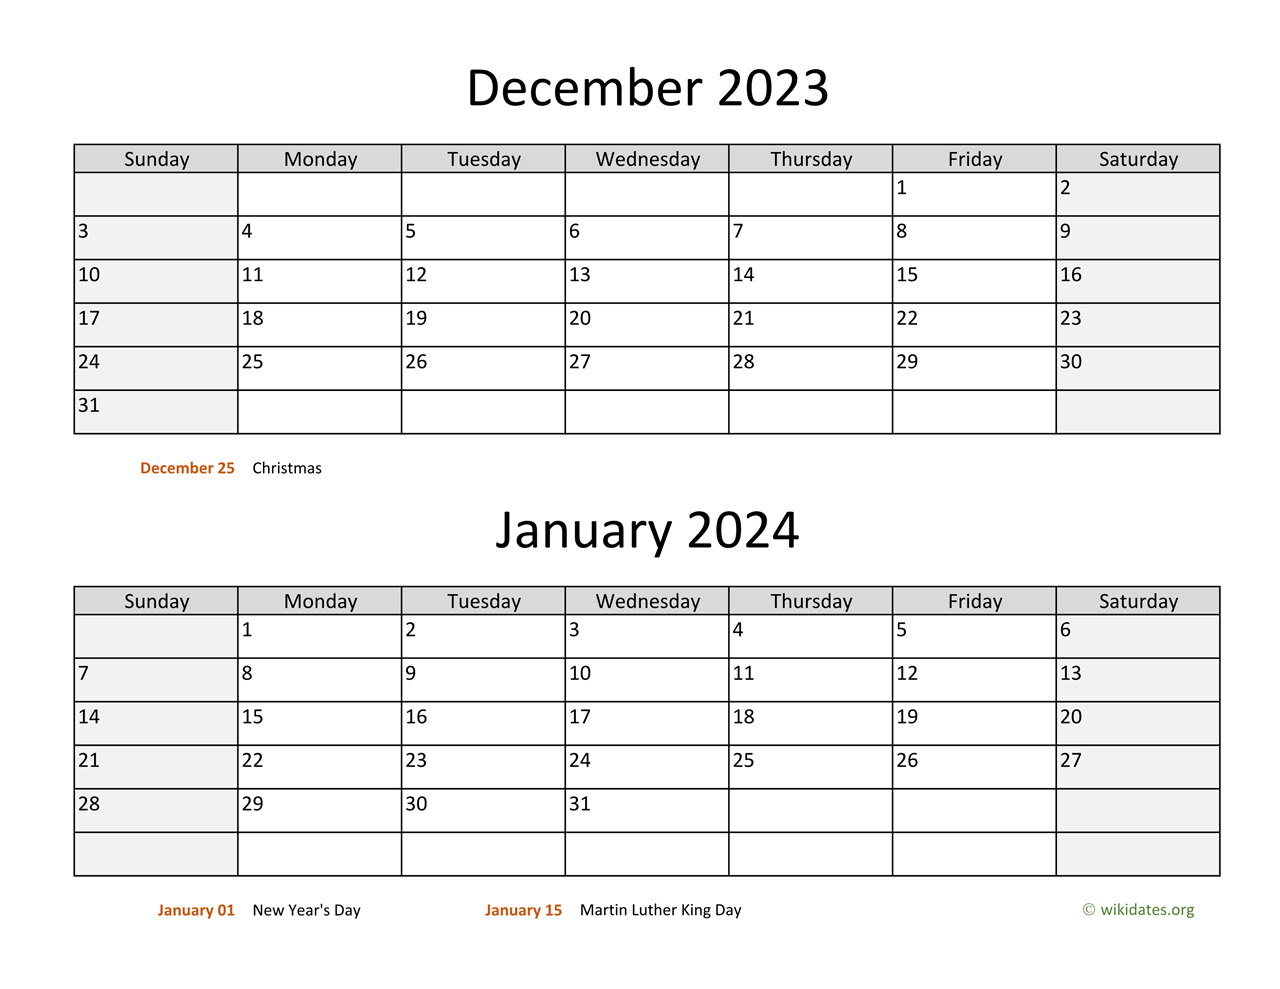 December 2023 Calendar January 2024 Calendar - Get Calendar 2023 Update